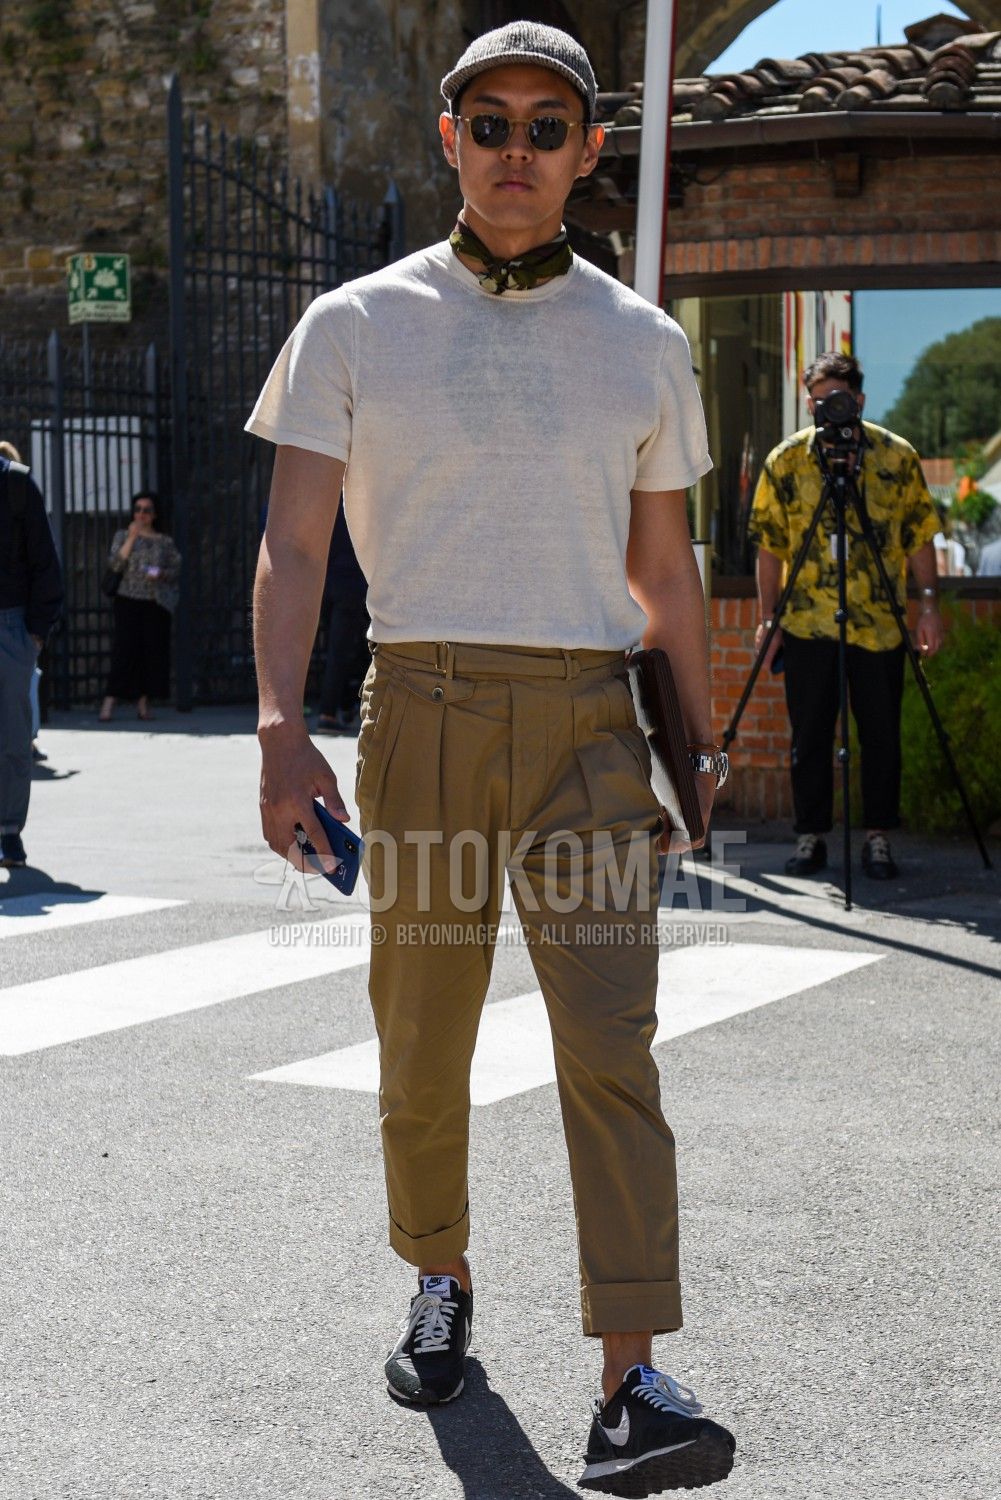 タックイン コーデ特集 スタイルアップしながらこなれ感を得たおすすめの着こなしを紹介 メンズファッションメディア Otokomae 男前研究所